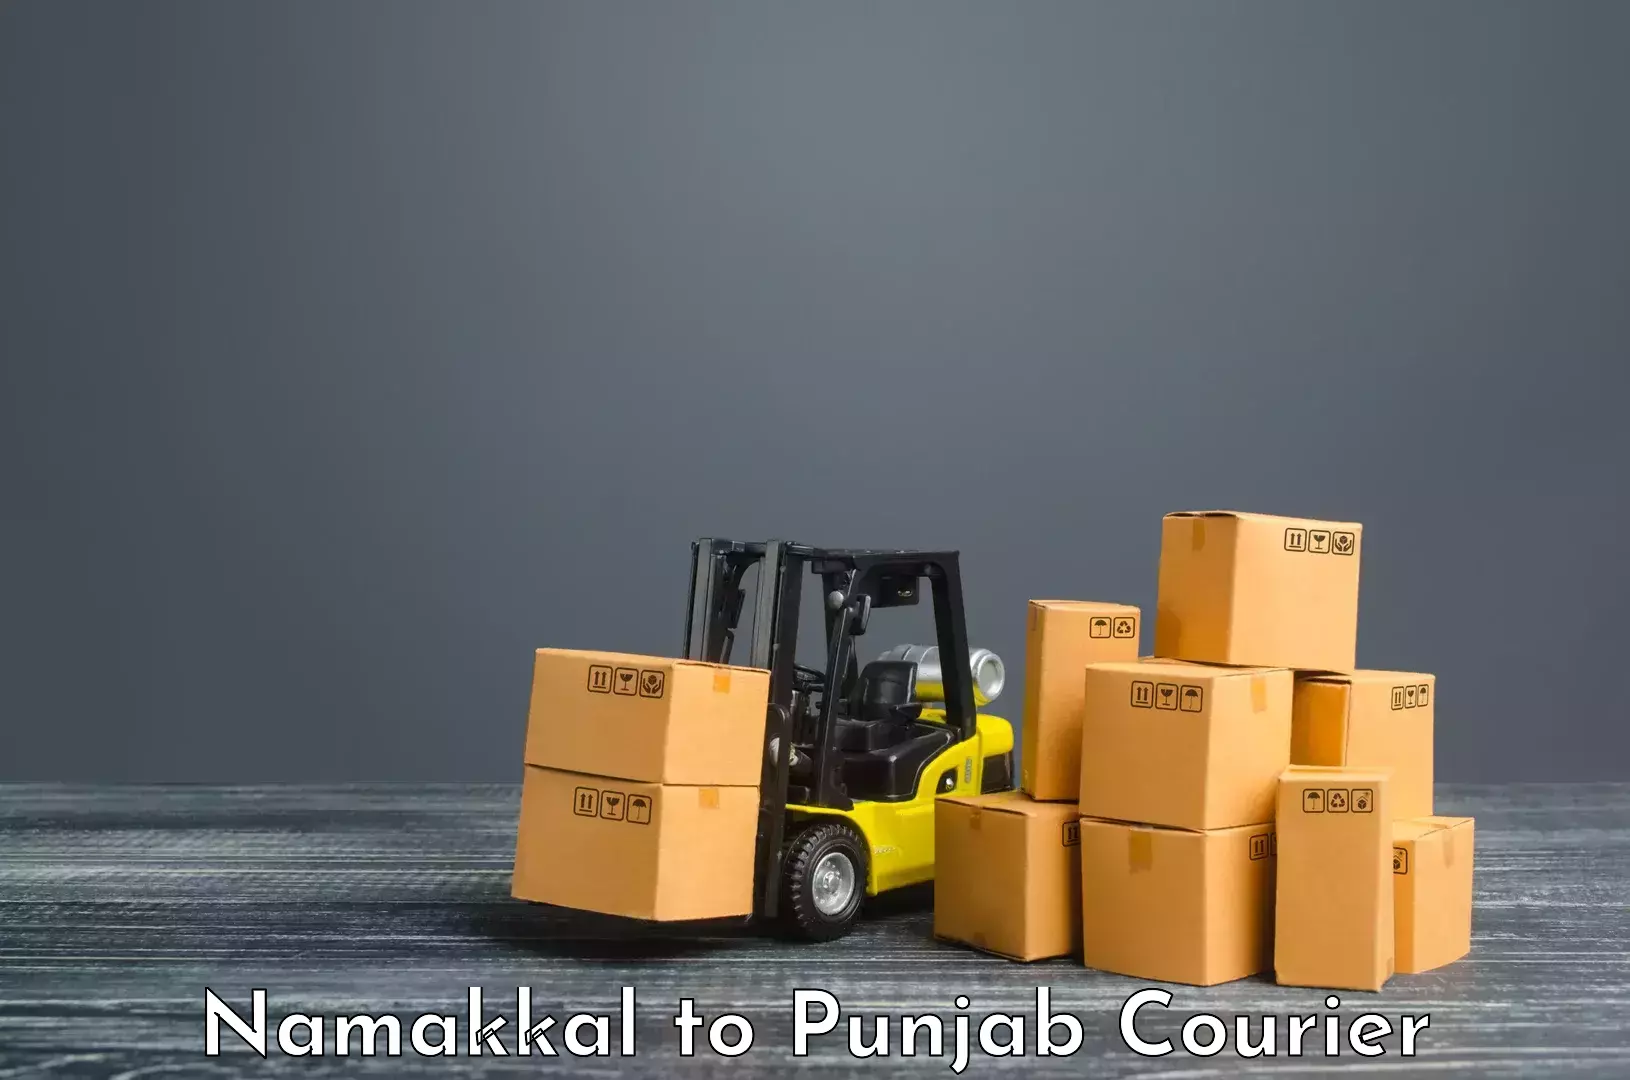 Smart parcel delivery Namakkal to Punjab